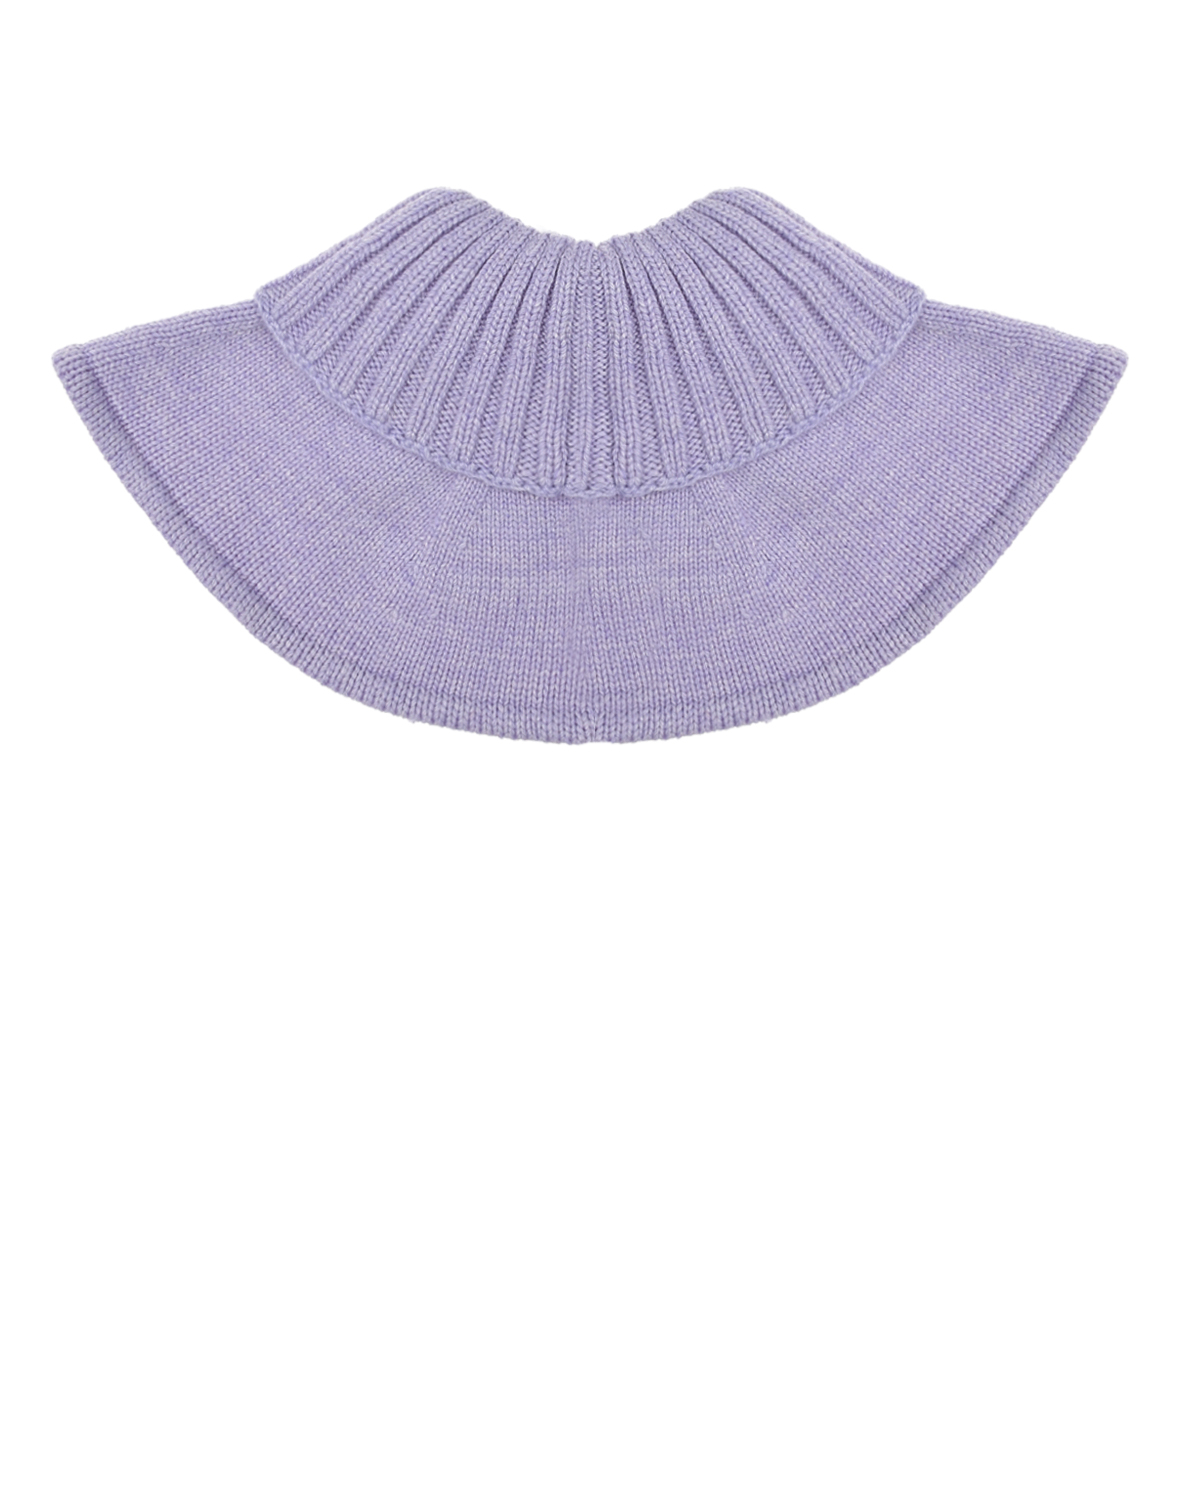 Лиловый вязаный шарф-горло Chobi детский, размер unica, цвет сиреневый - фото 1